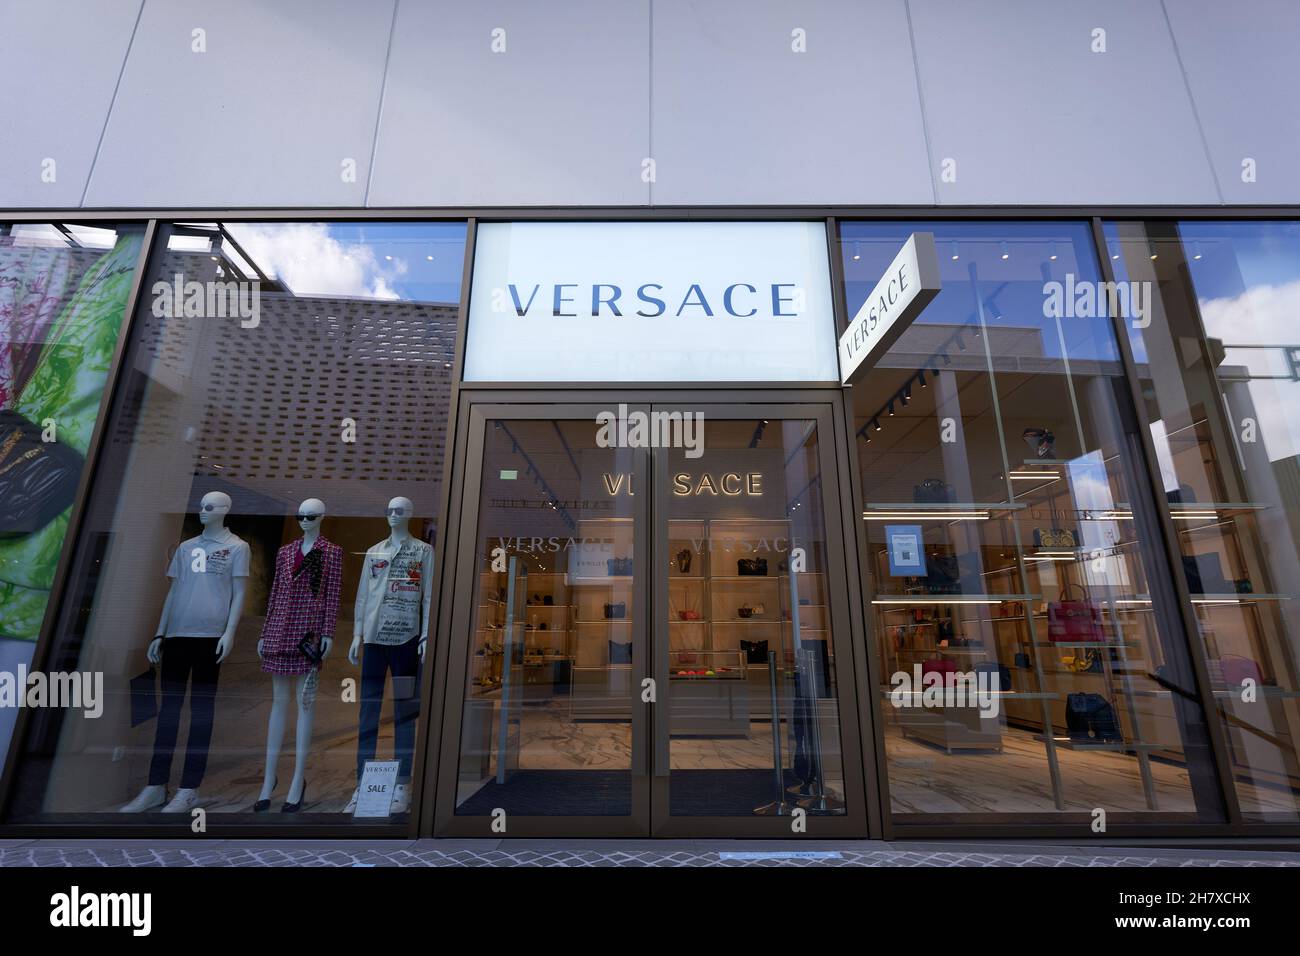 Versace outlet immagini e fotografie stock ad alta risoluzione - Alamy